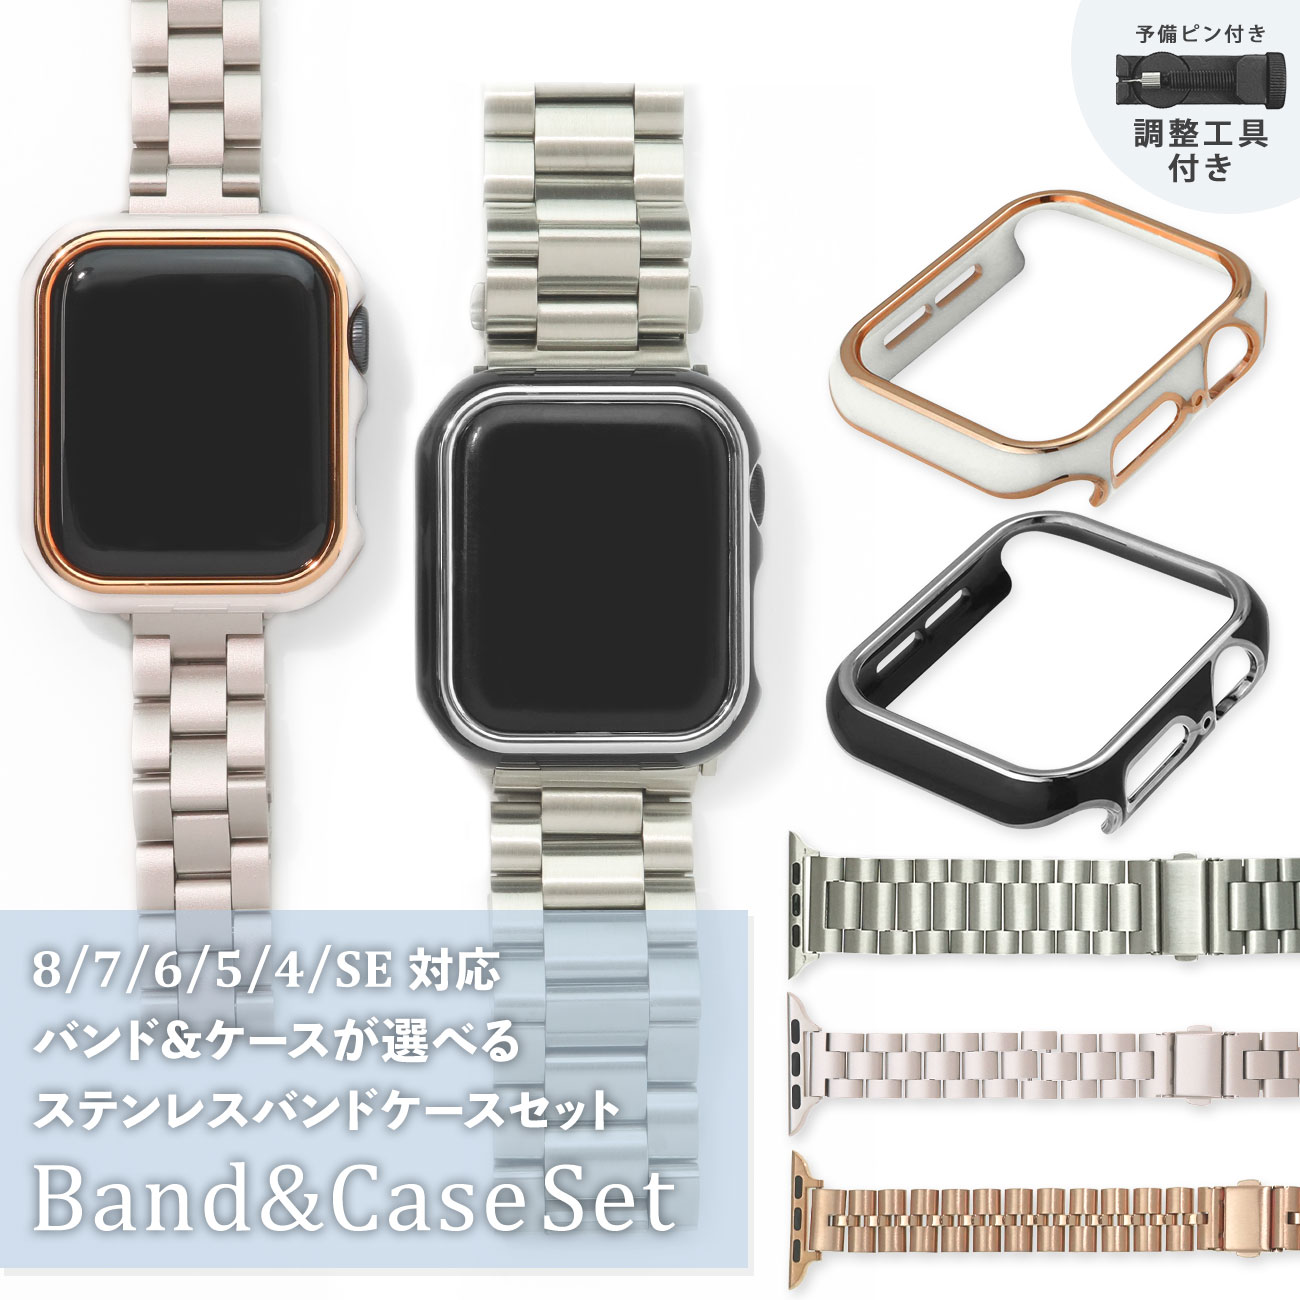 Apple Watchステンレスベルト (ブラック)フレーム付 男 女 - 金属ベルト